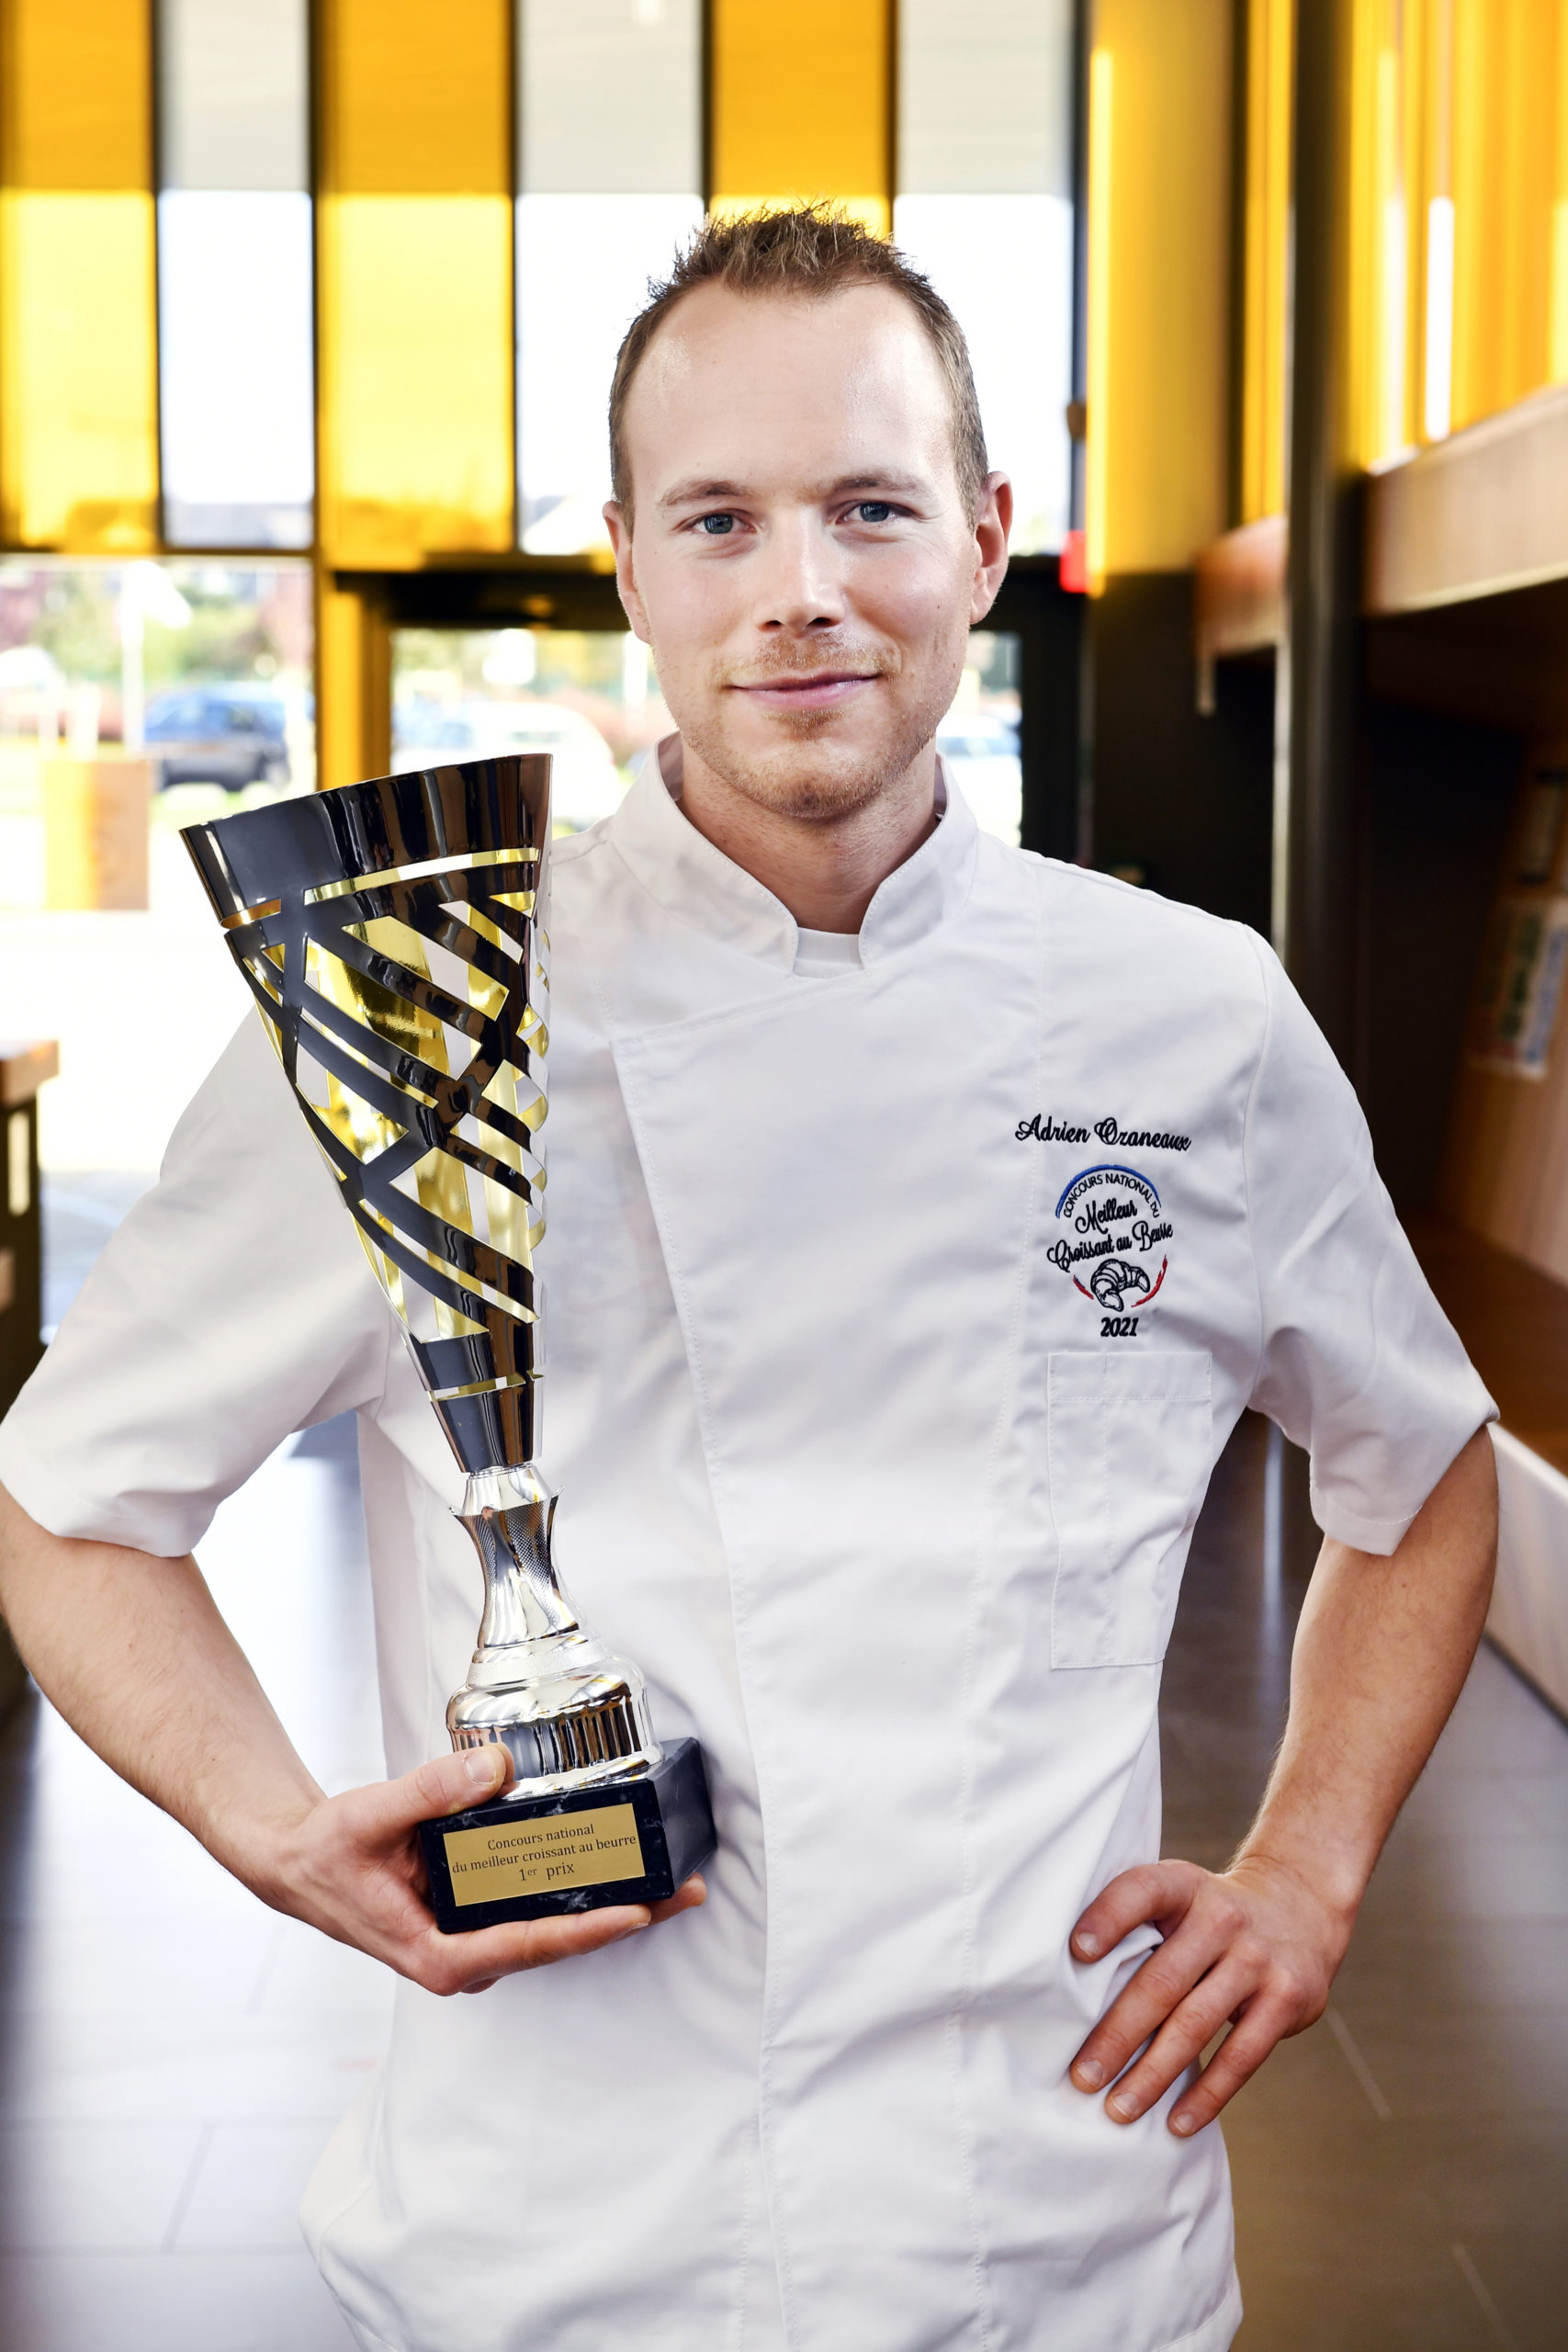 Adrien Ozaneaux, 28 ans, vainqueur du Concours National du Meilleur Croissant au Beurre 2021